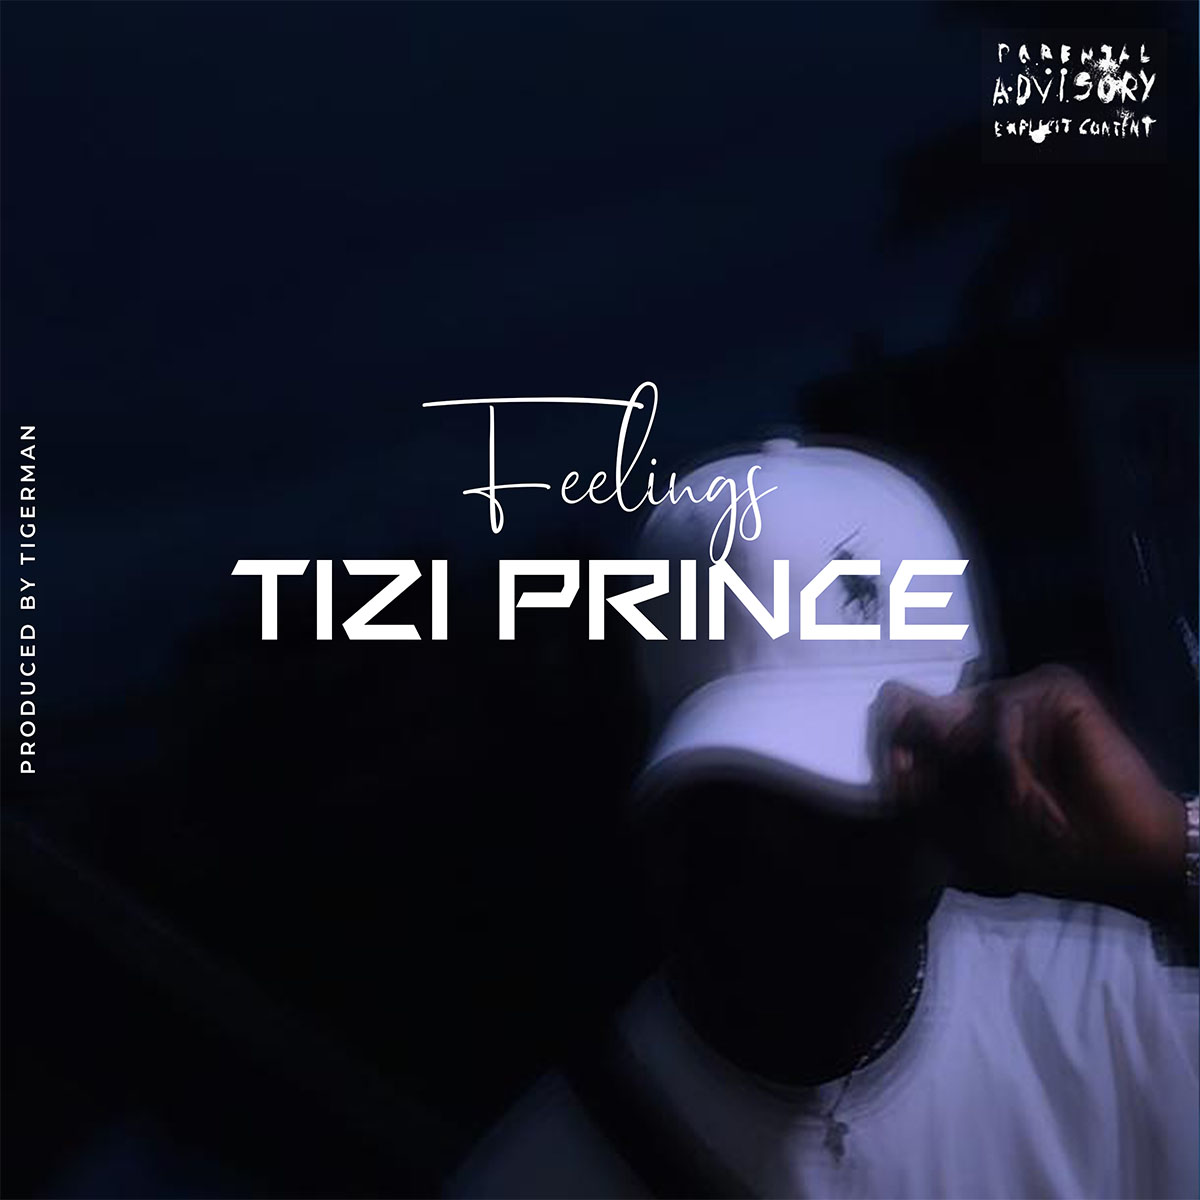 Tizi prince - feelings cover art